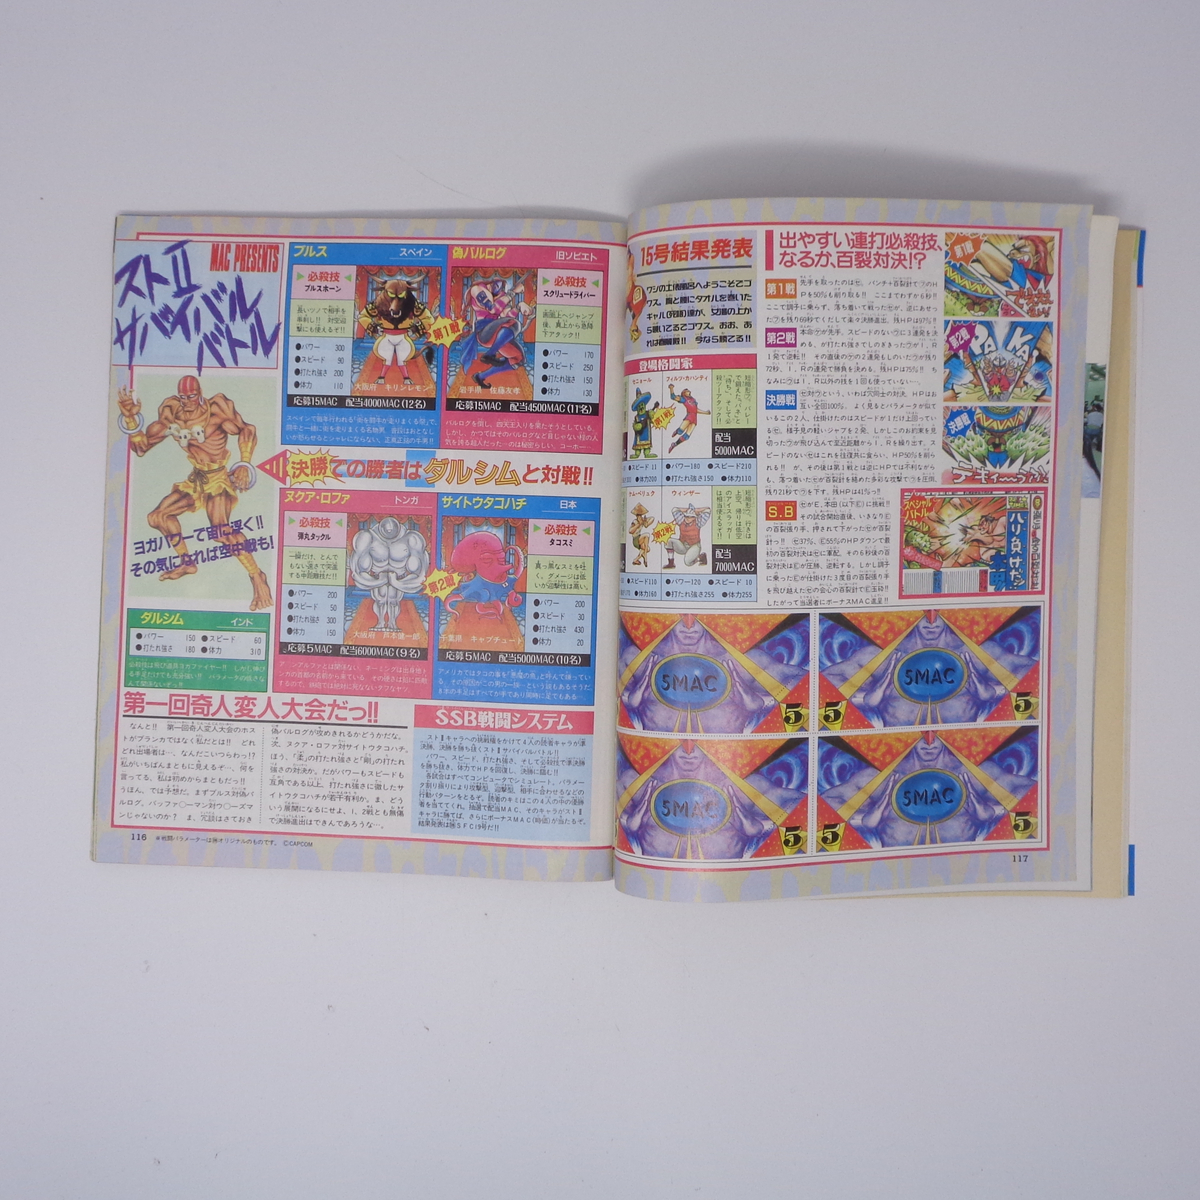 マルカツ スーパーファミコン 1992年9月25日号VOL.17 別冊付録無し/DQ5/ファミコンスペースワールド92/ゲーム雑誌[Free Shipping] _画像10